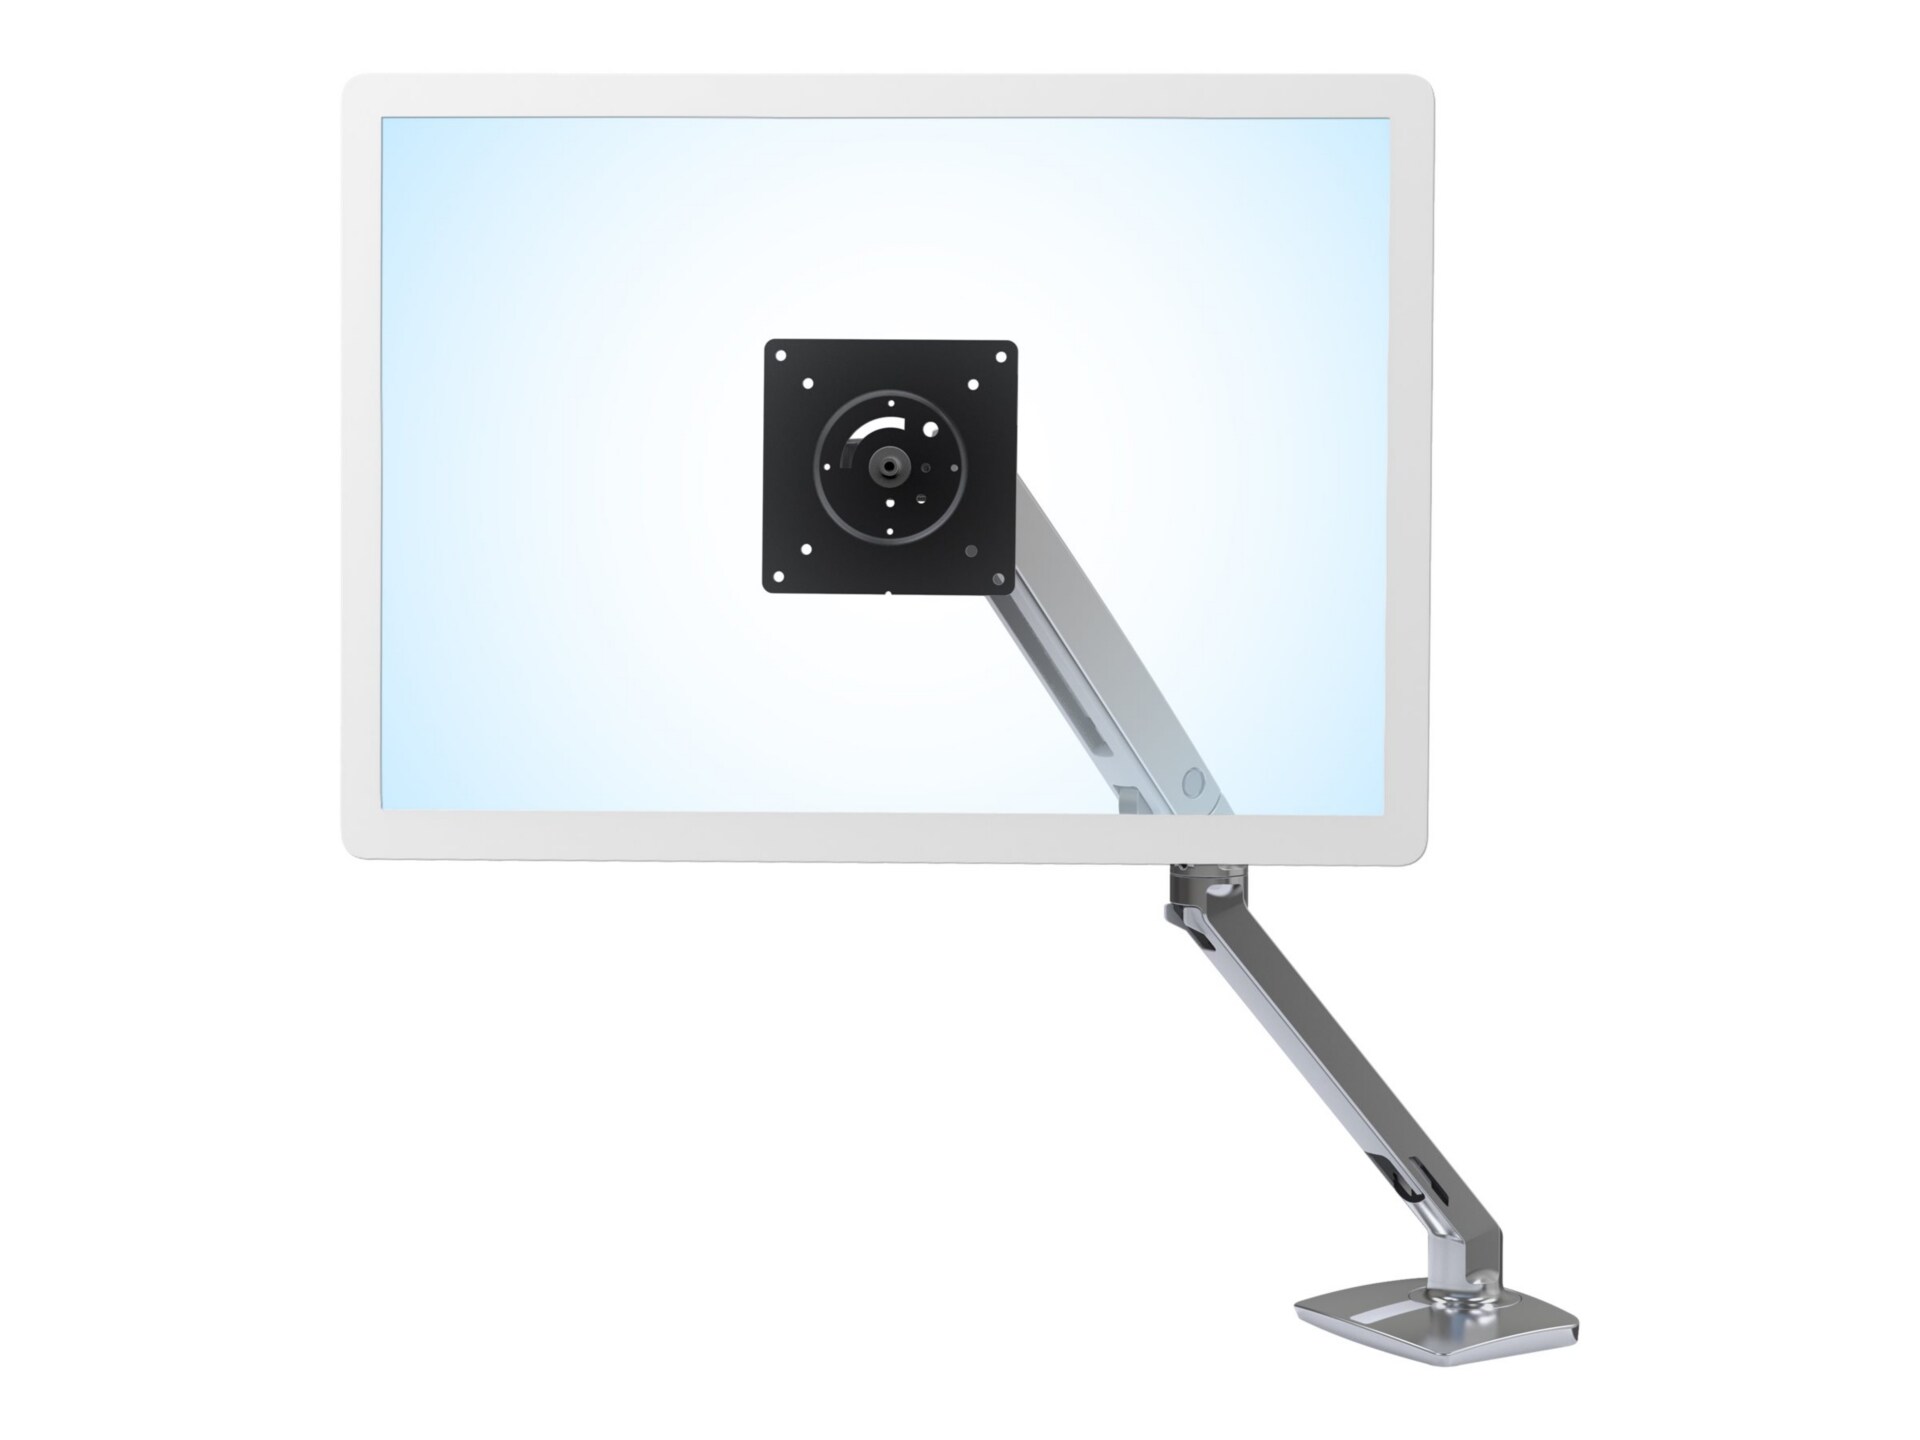 Ergotron MXV Desk Monitor Arm mounting kit - adjustable arm - for monitor - polished aluminum